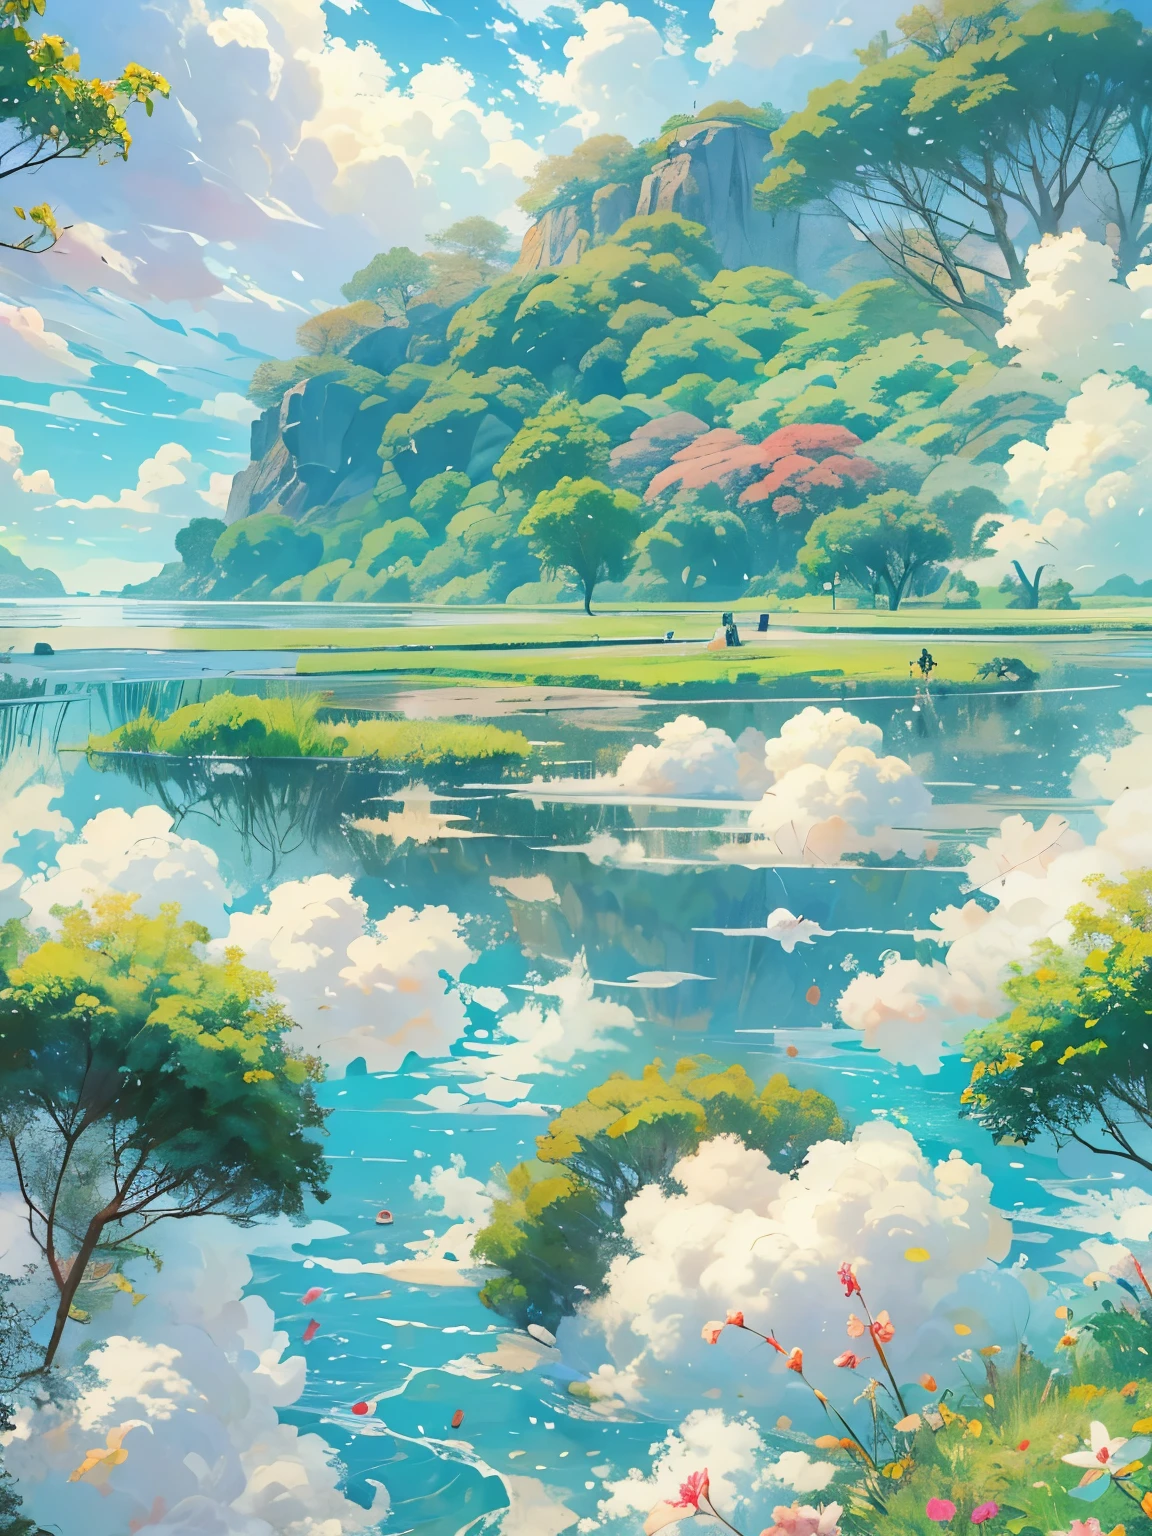 реалистичный, подлинный, Красивый и удивительный пейзаж картина маслом Студия Ghibli Хаяо Миядзаки;Лепестковый луг с голубым небом и белыми облаками